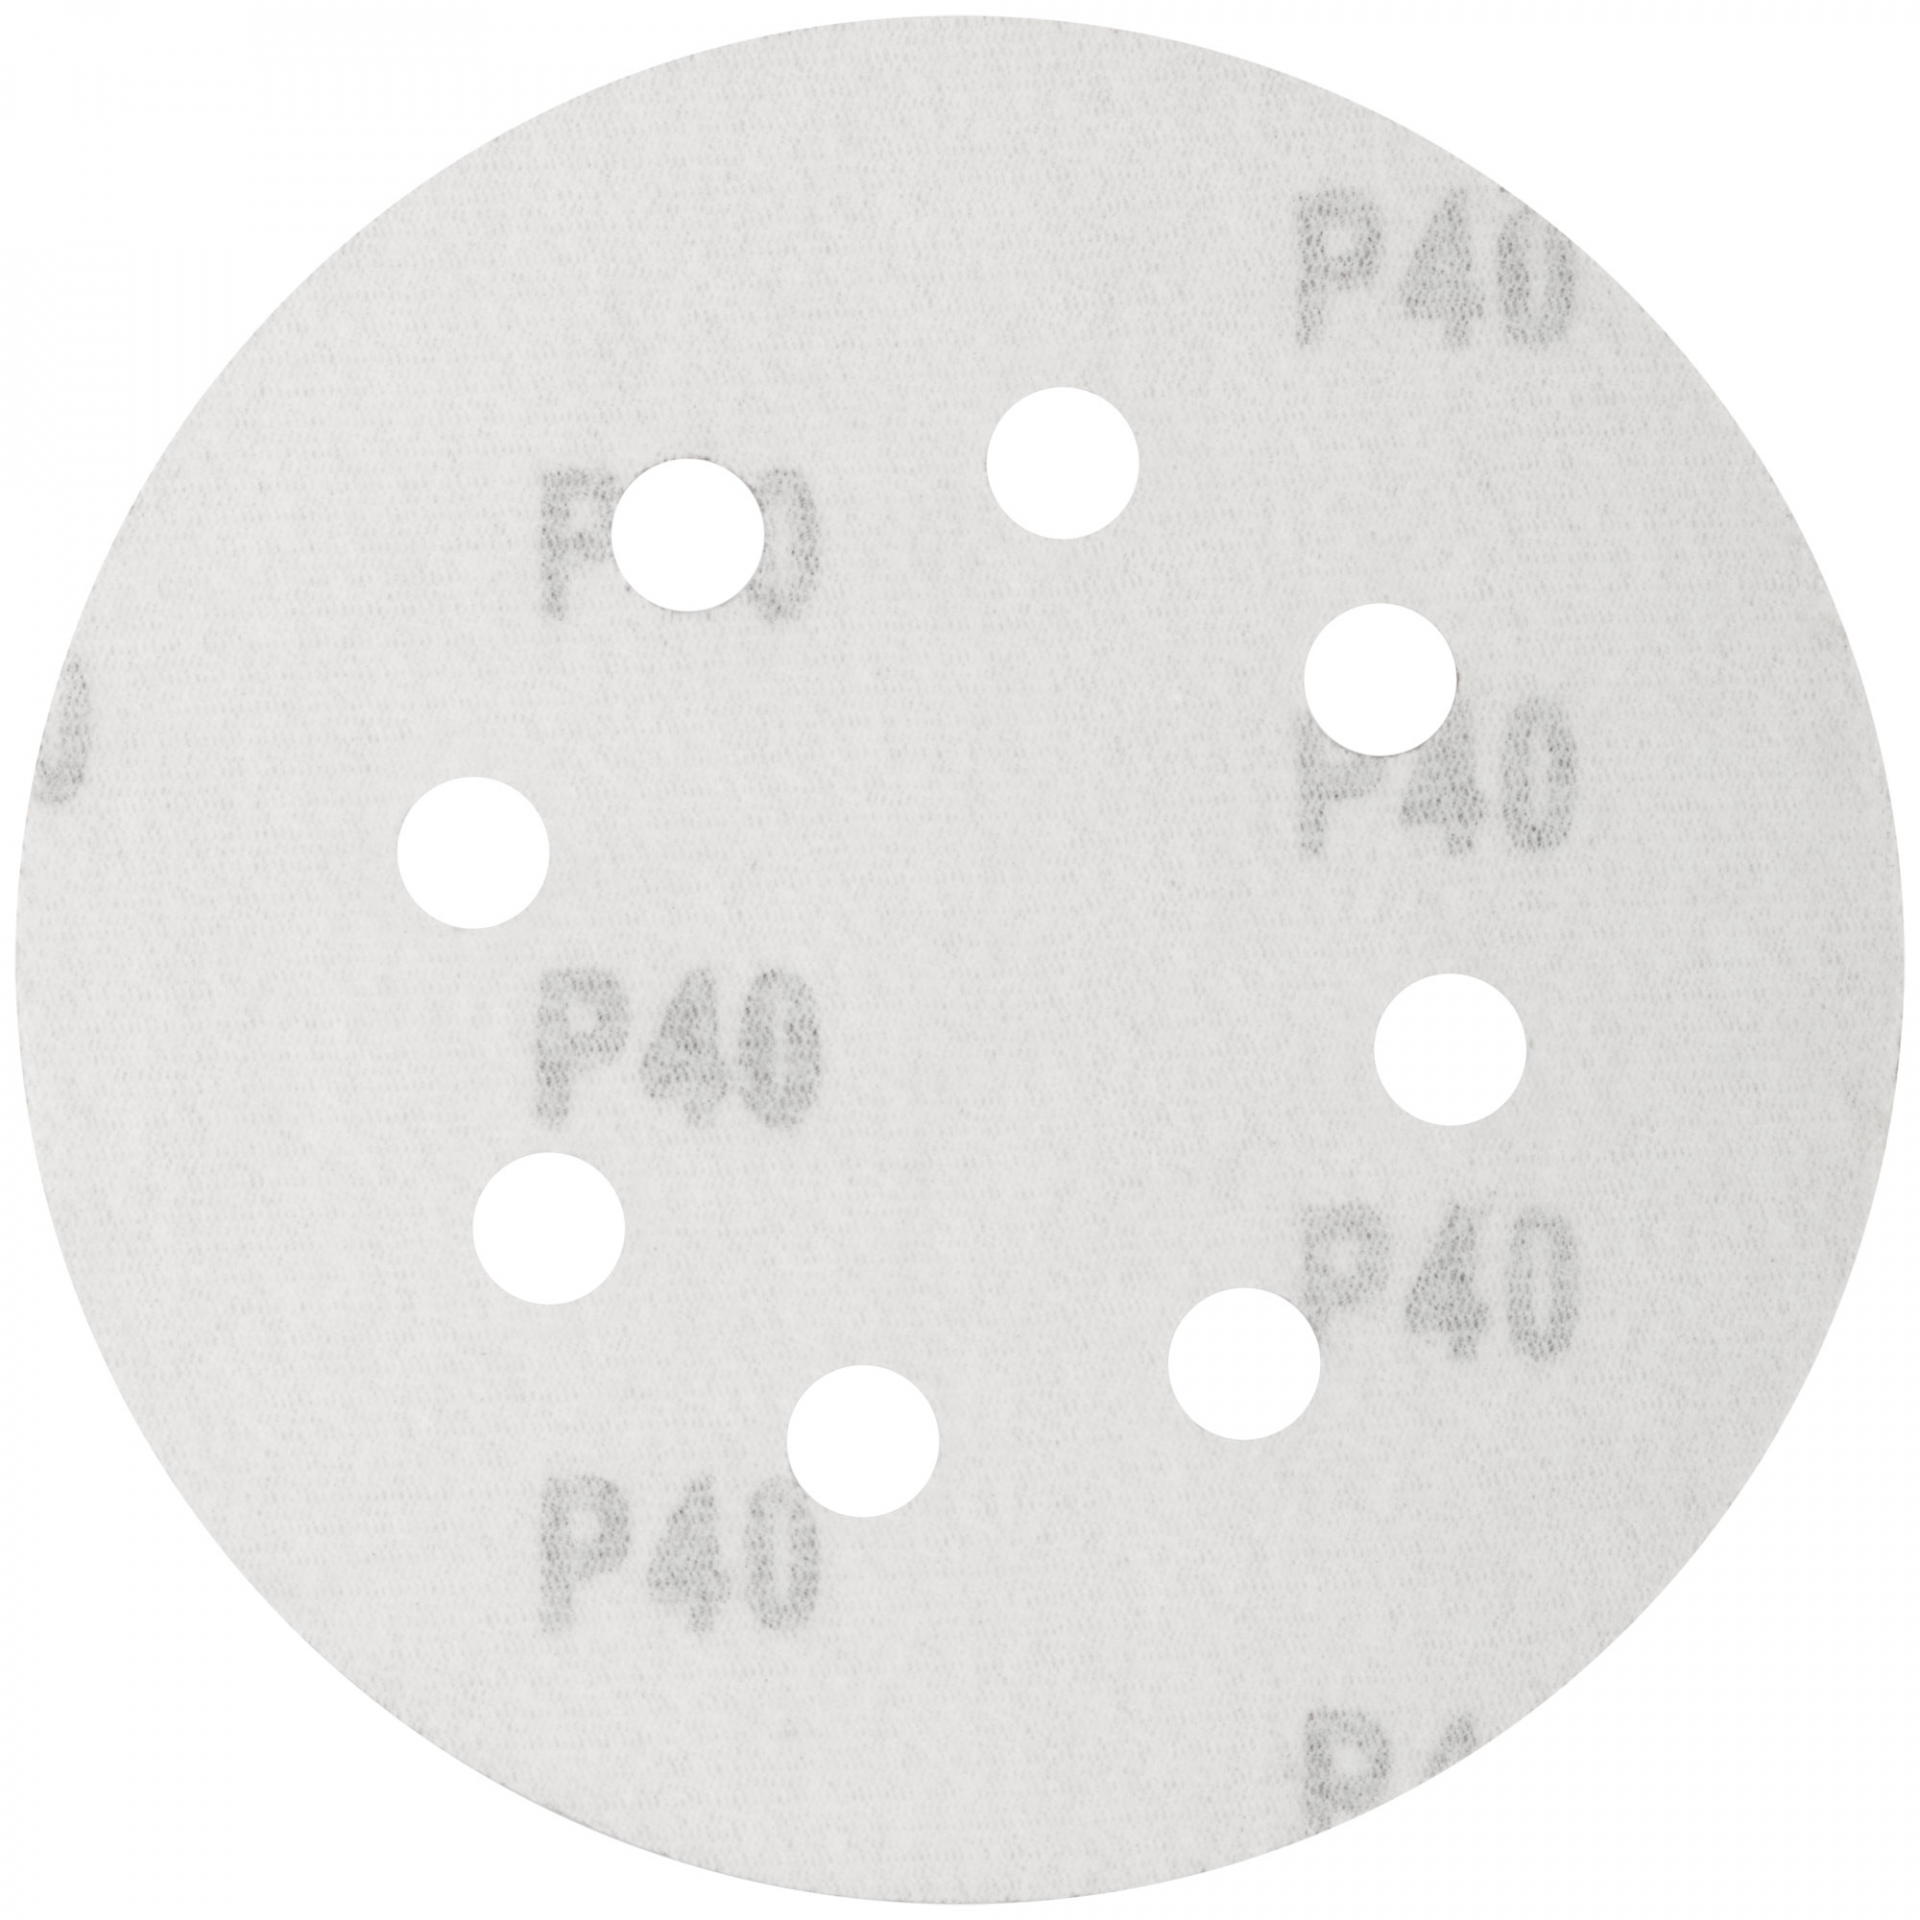 Круги шлифовальные с отверстиями (липучка), алюминий-оксидные, 125 мм, 5 шт. Р 40